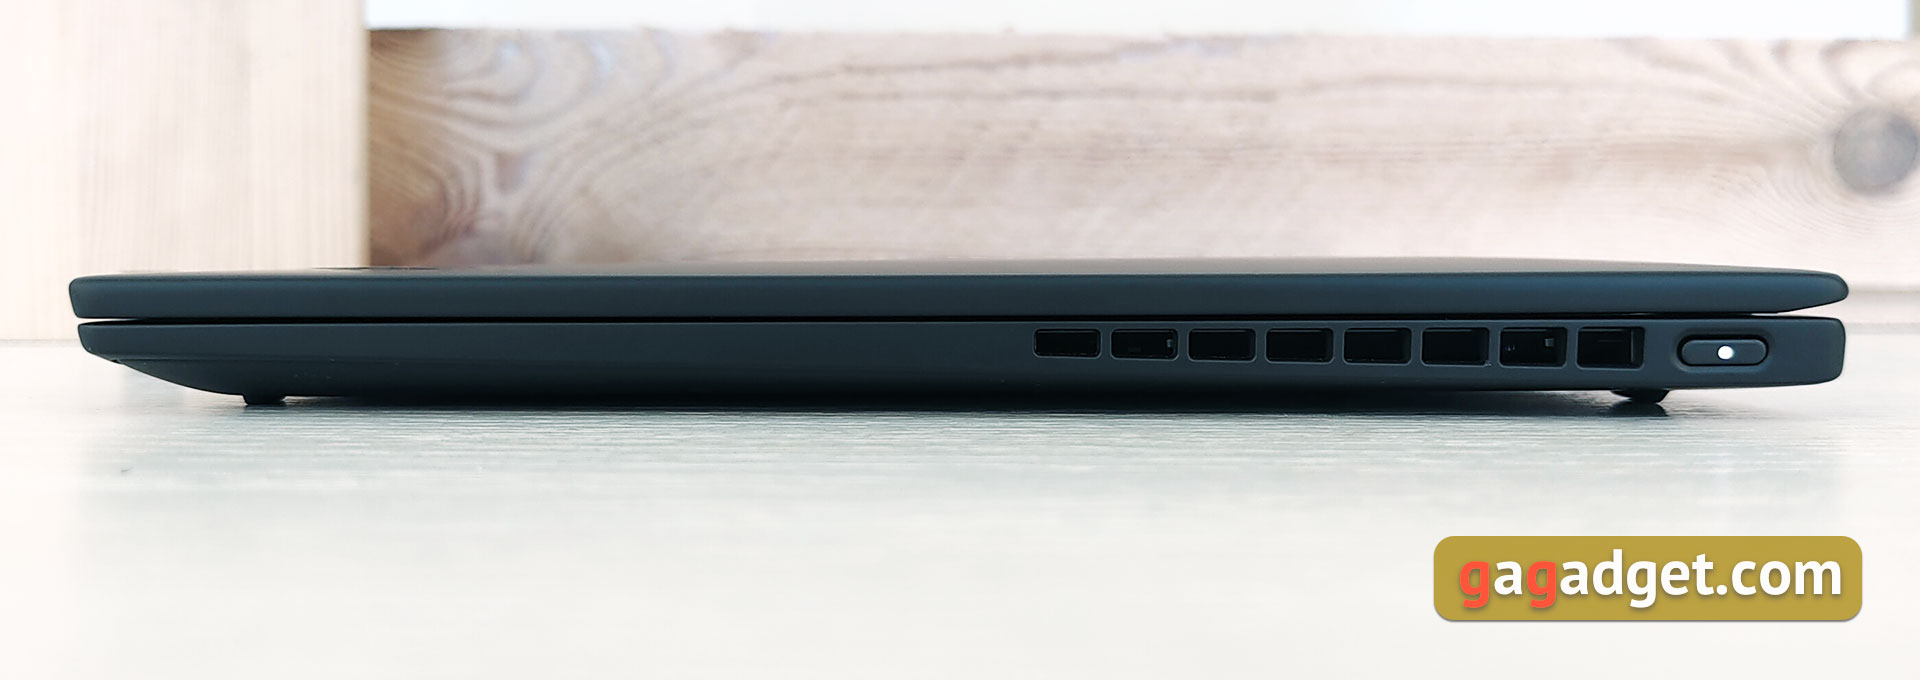 Recenzja Lenovo ThinkPad X1 Nano: najlżejszy ThinkPad-8